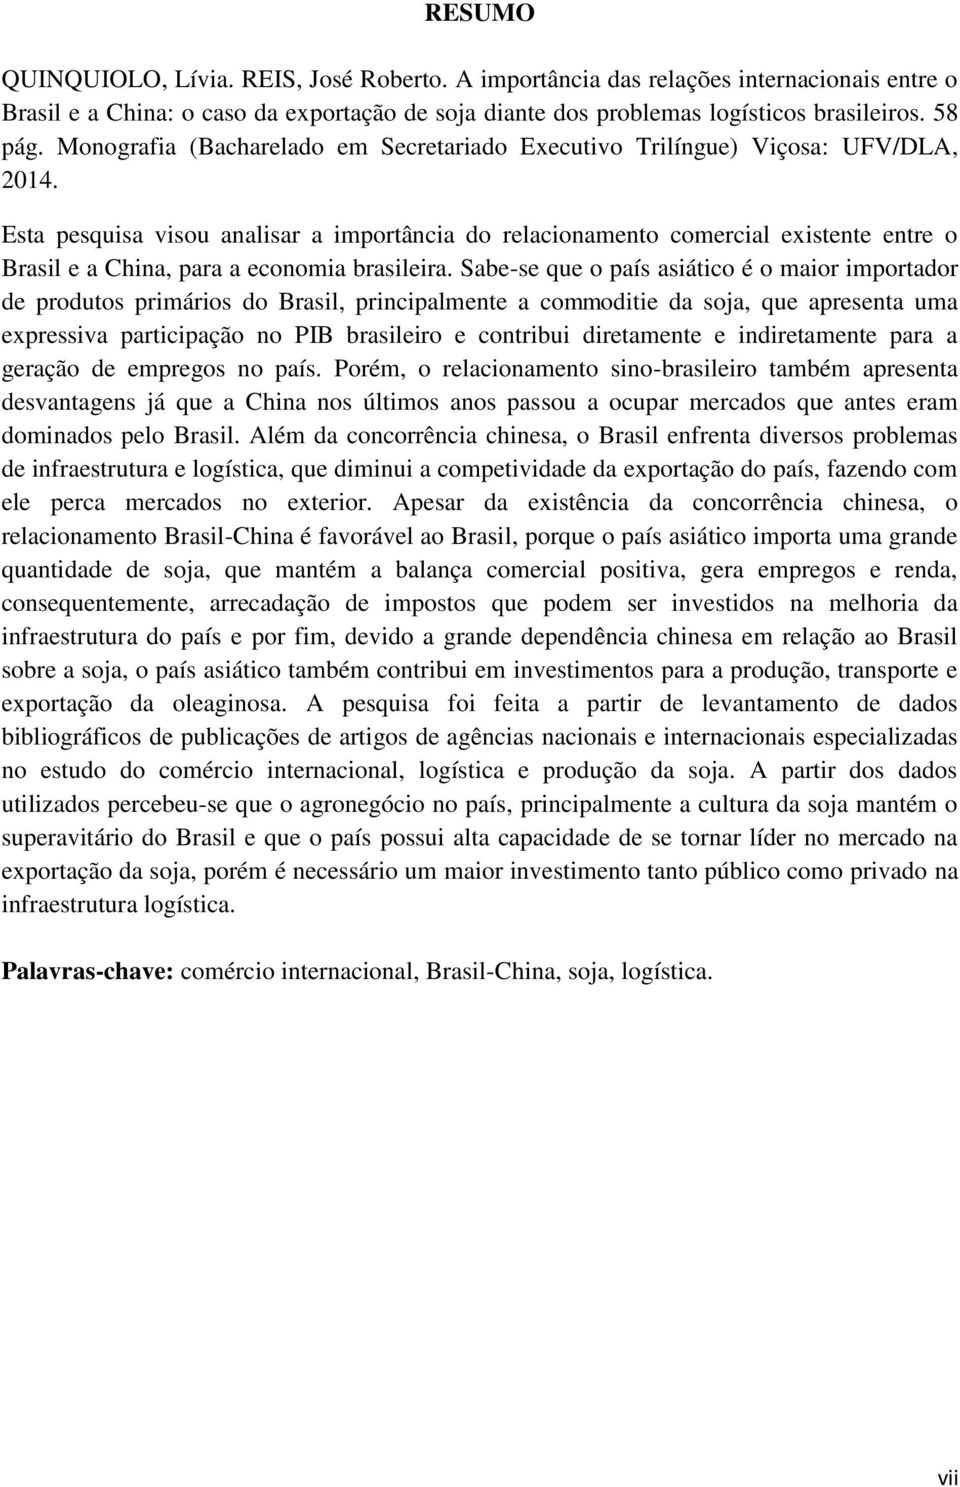 Esta pesquisa visou analisar a importância do relacionamento comercial existente entre o Brasil e a China, para a economia brasileira.